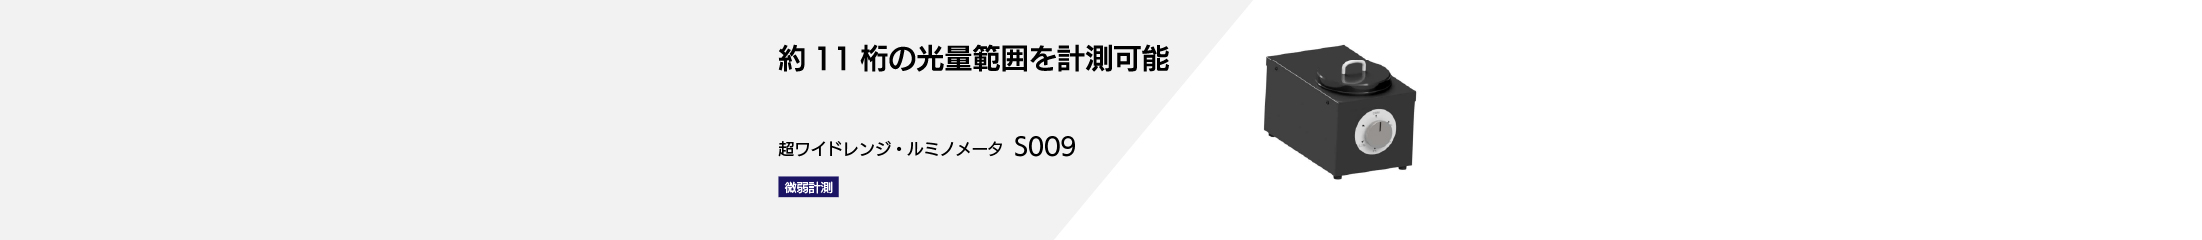 超ワイドレンジ・ルミノメータS009